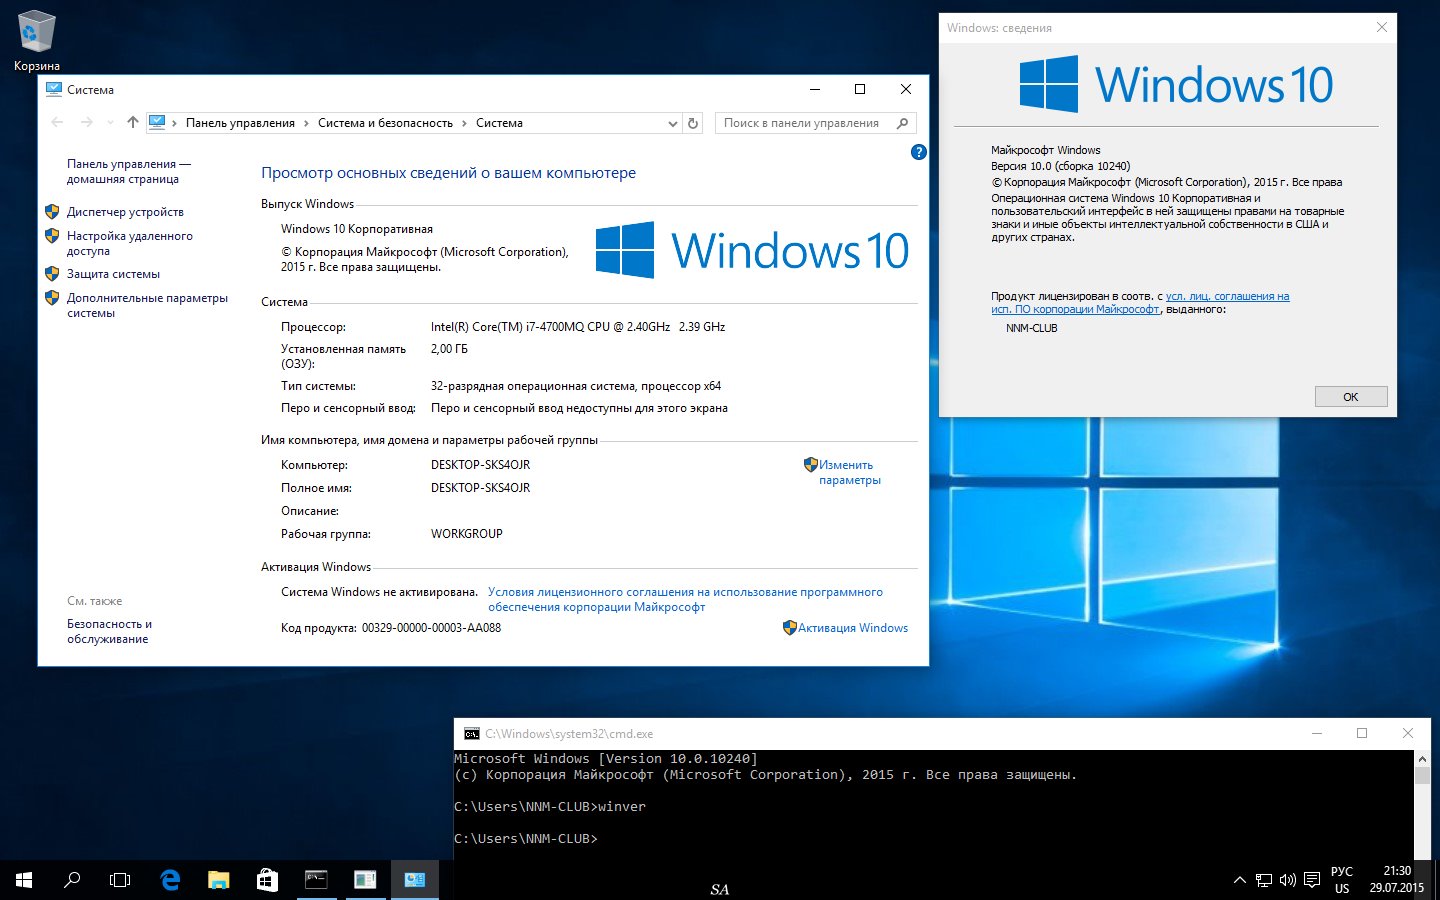 windows 10 enterprise 2015 ltsb x86 registers